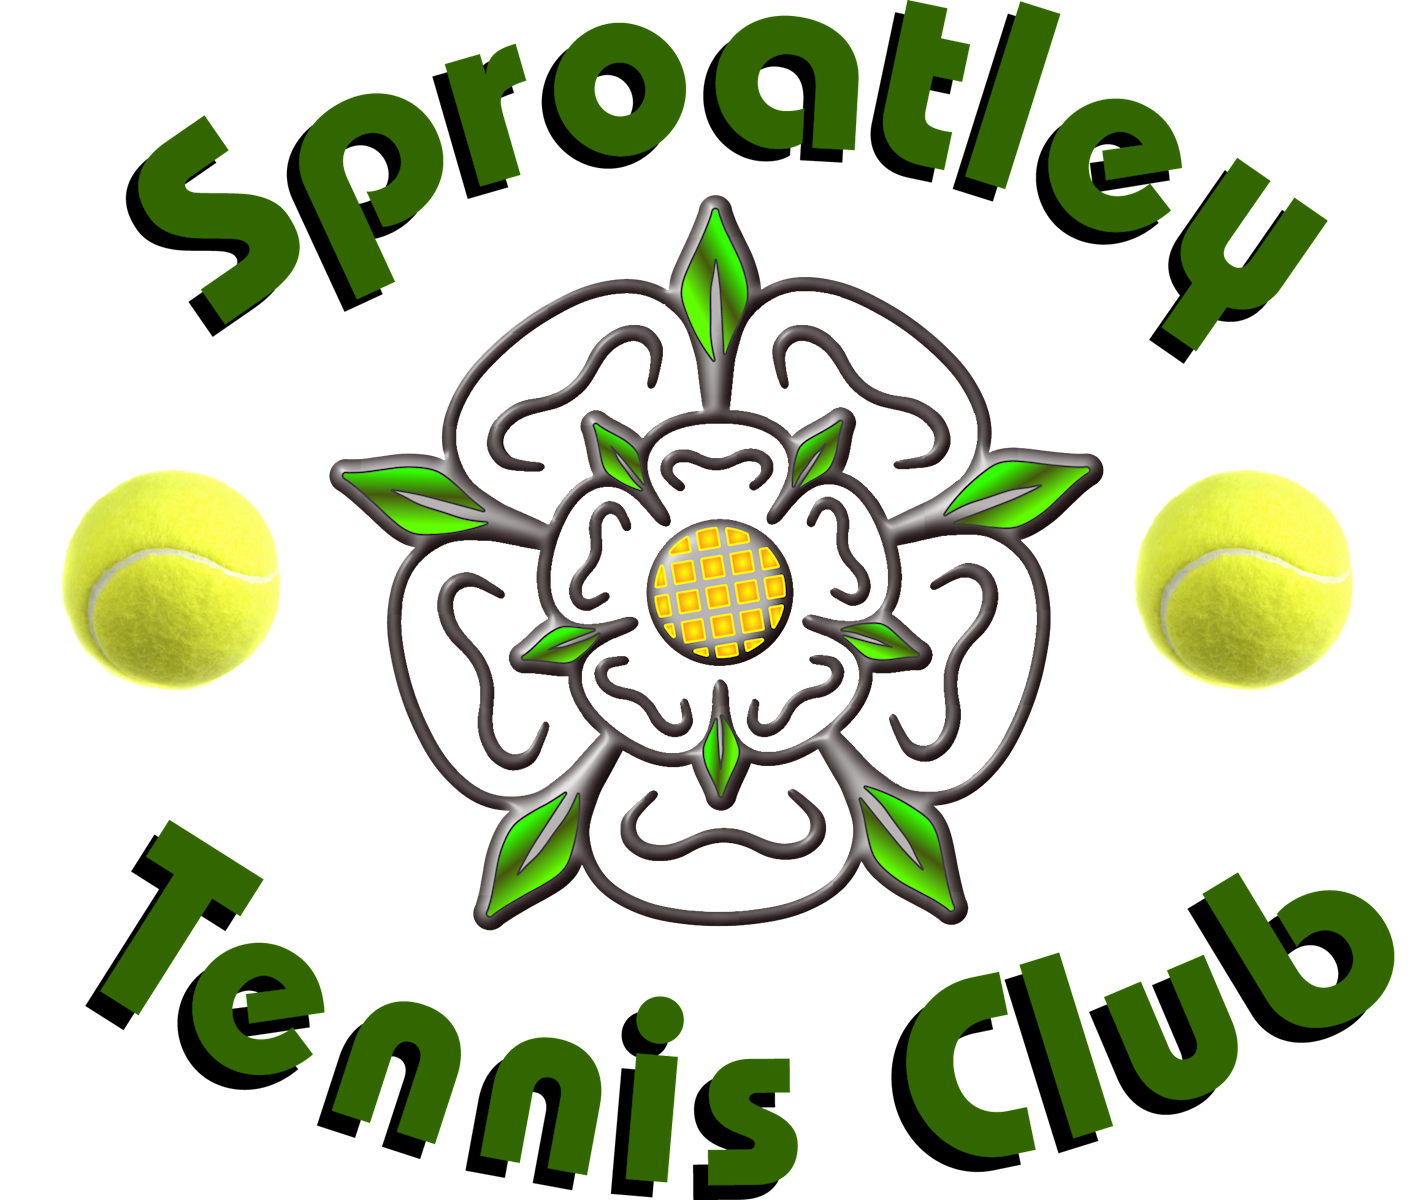 Sproatley Tennis Club